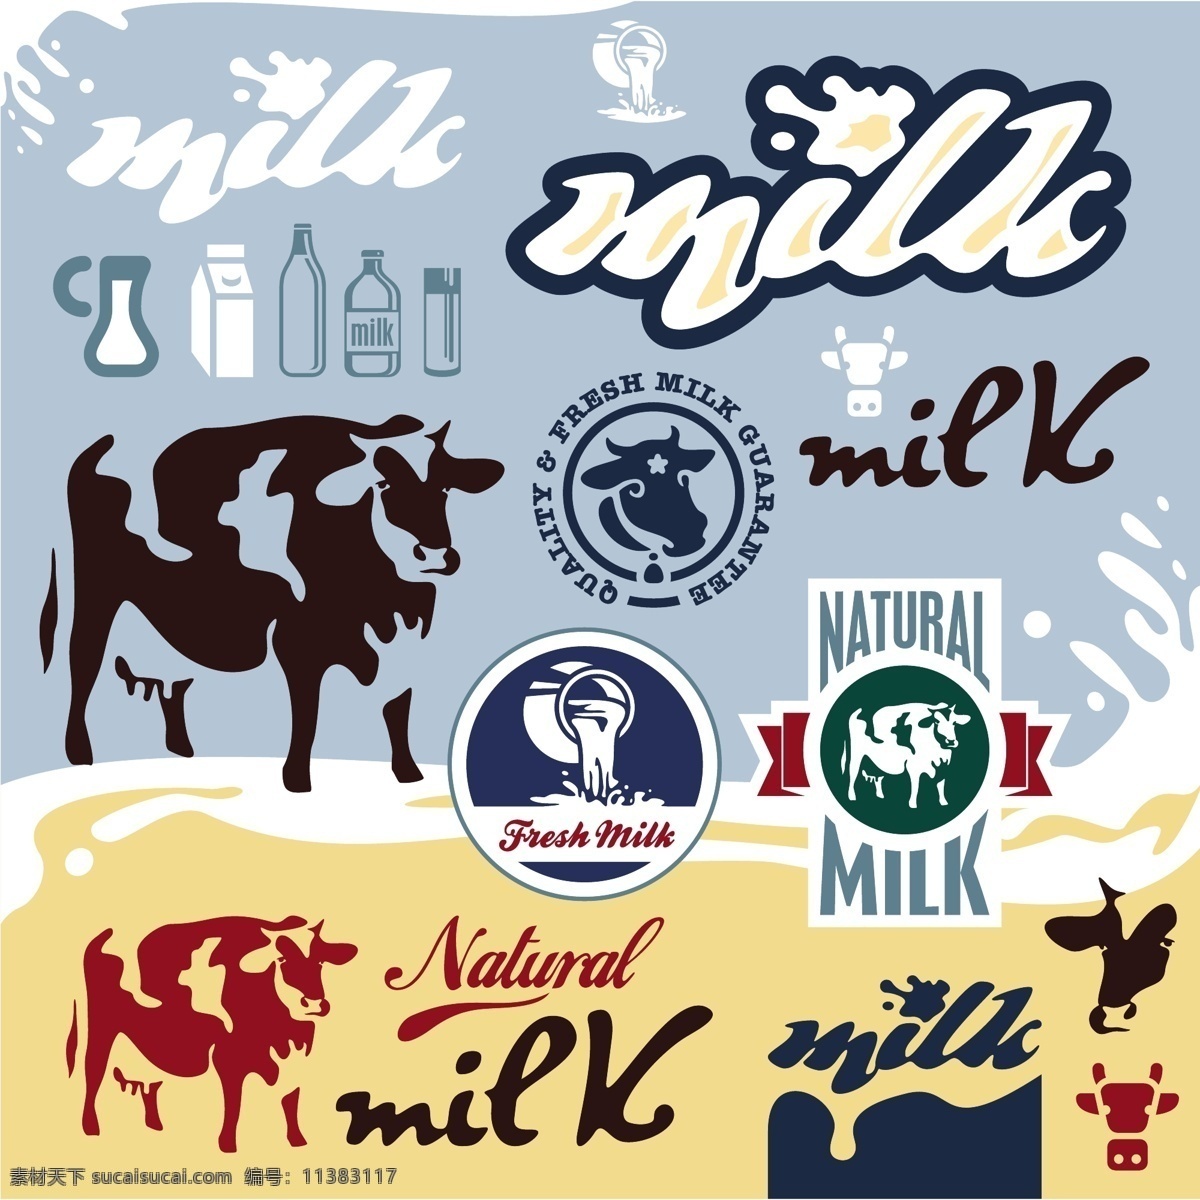 标识标志图标 标志图标 抽象设计 卡通背景 卡通设计 牛奶 牛奶广告 矢量设计 标志 矢量 模板下载 牛奶标志 牛奶设计 牛奶图标 牛奶标签 牛奶商标 牛奶logo 艺术设计 淘宝素材 淘宝促销标签